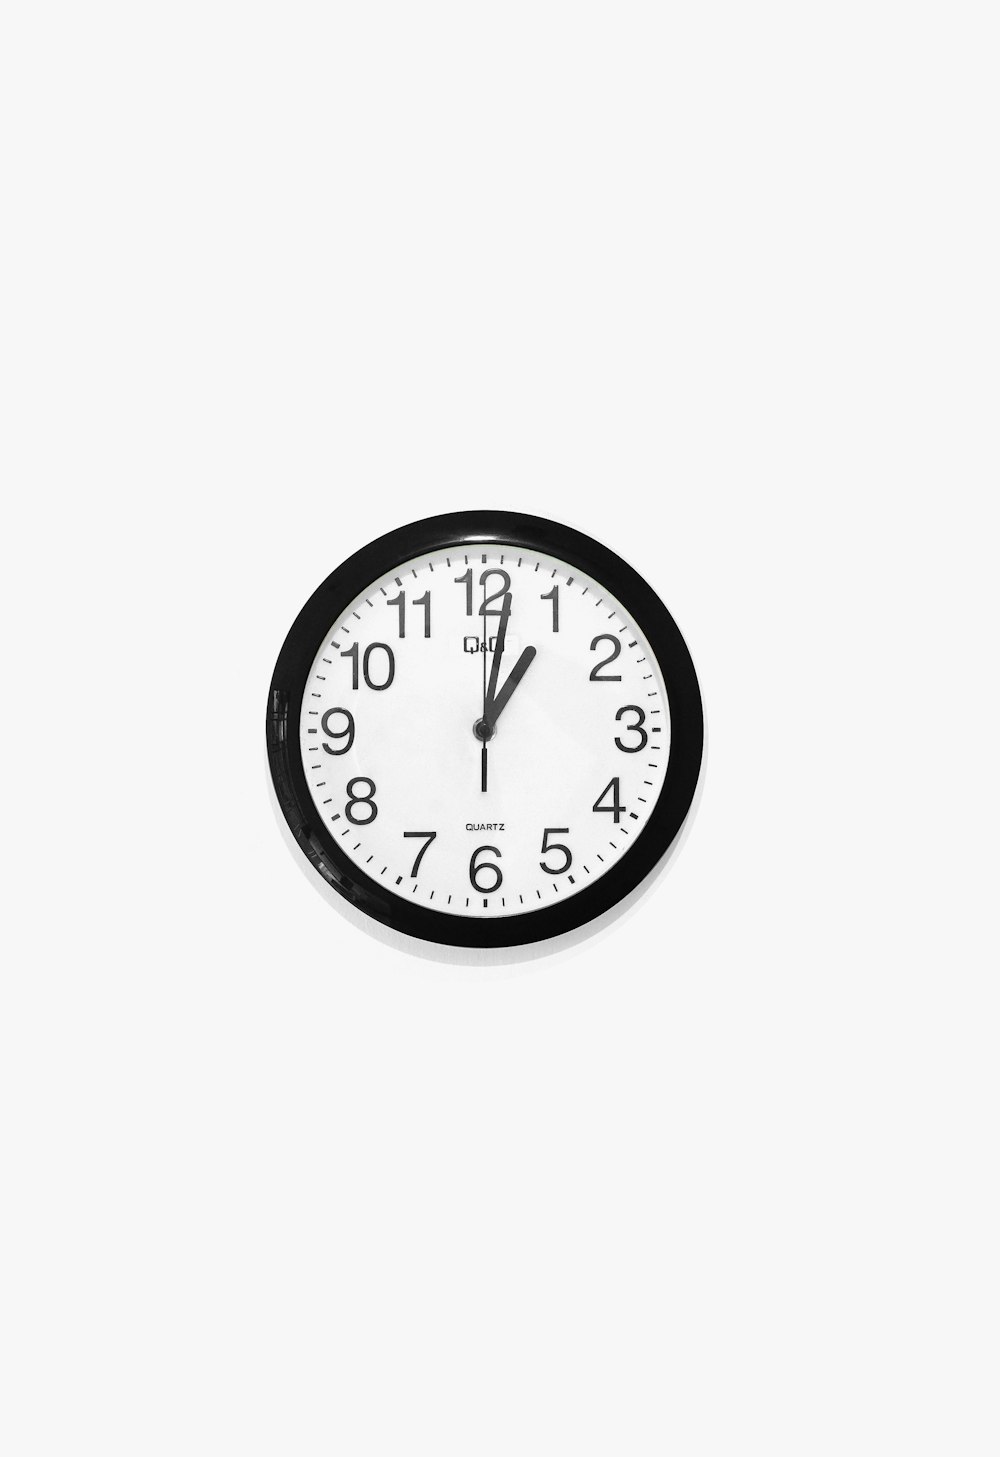 relógio de parede analógico redondo preto e branco em 10 10